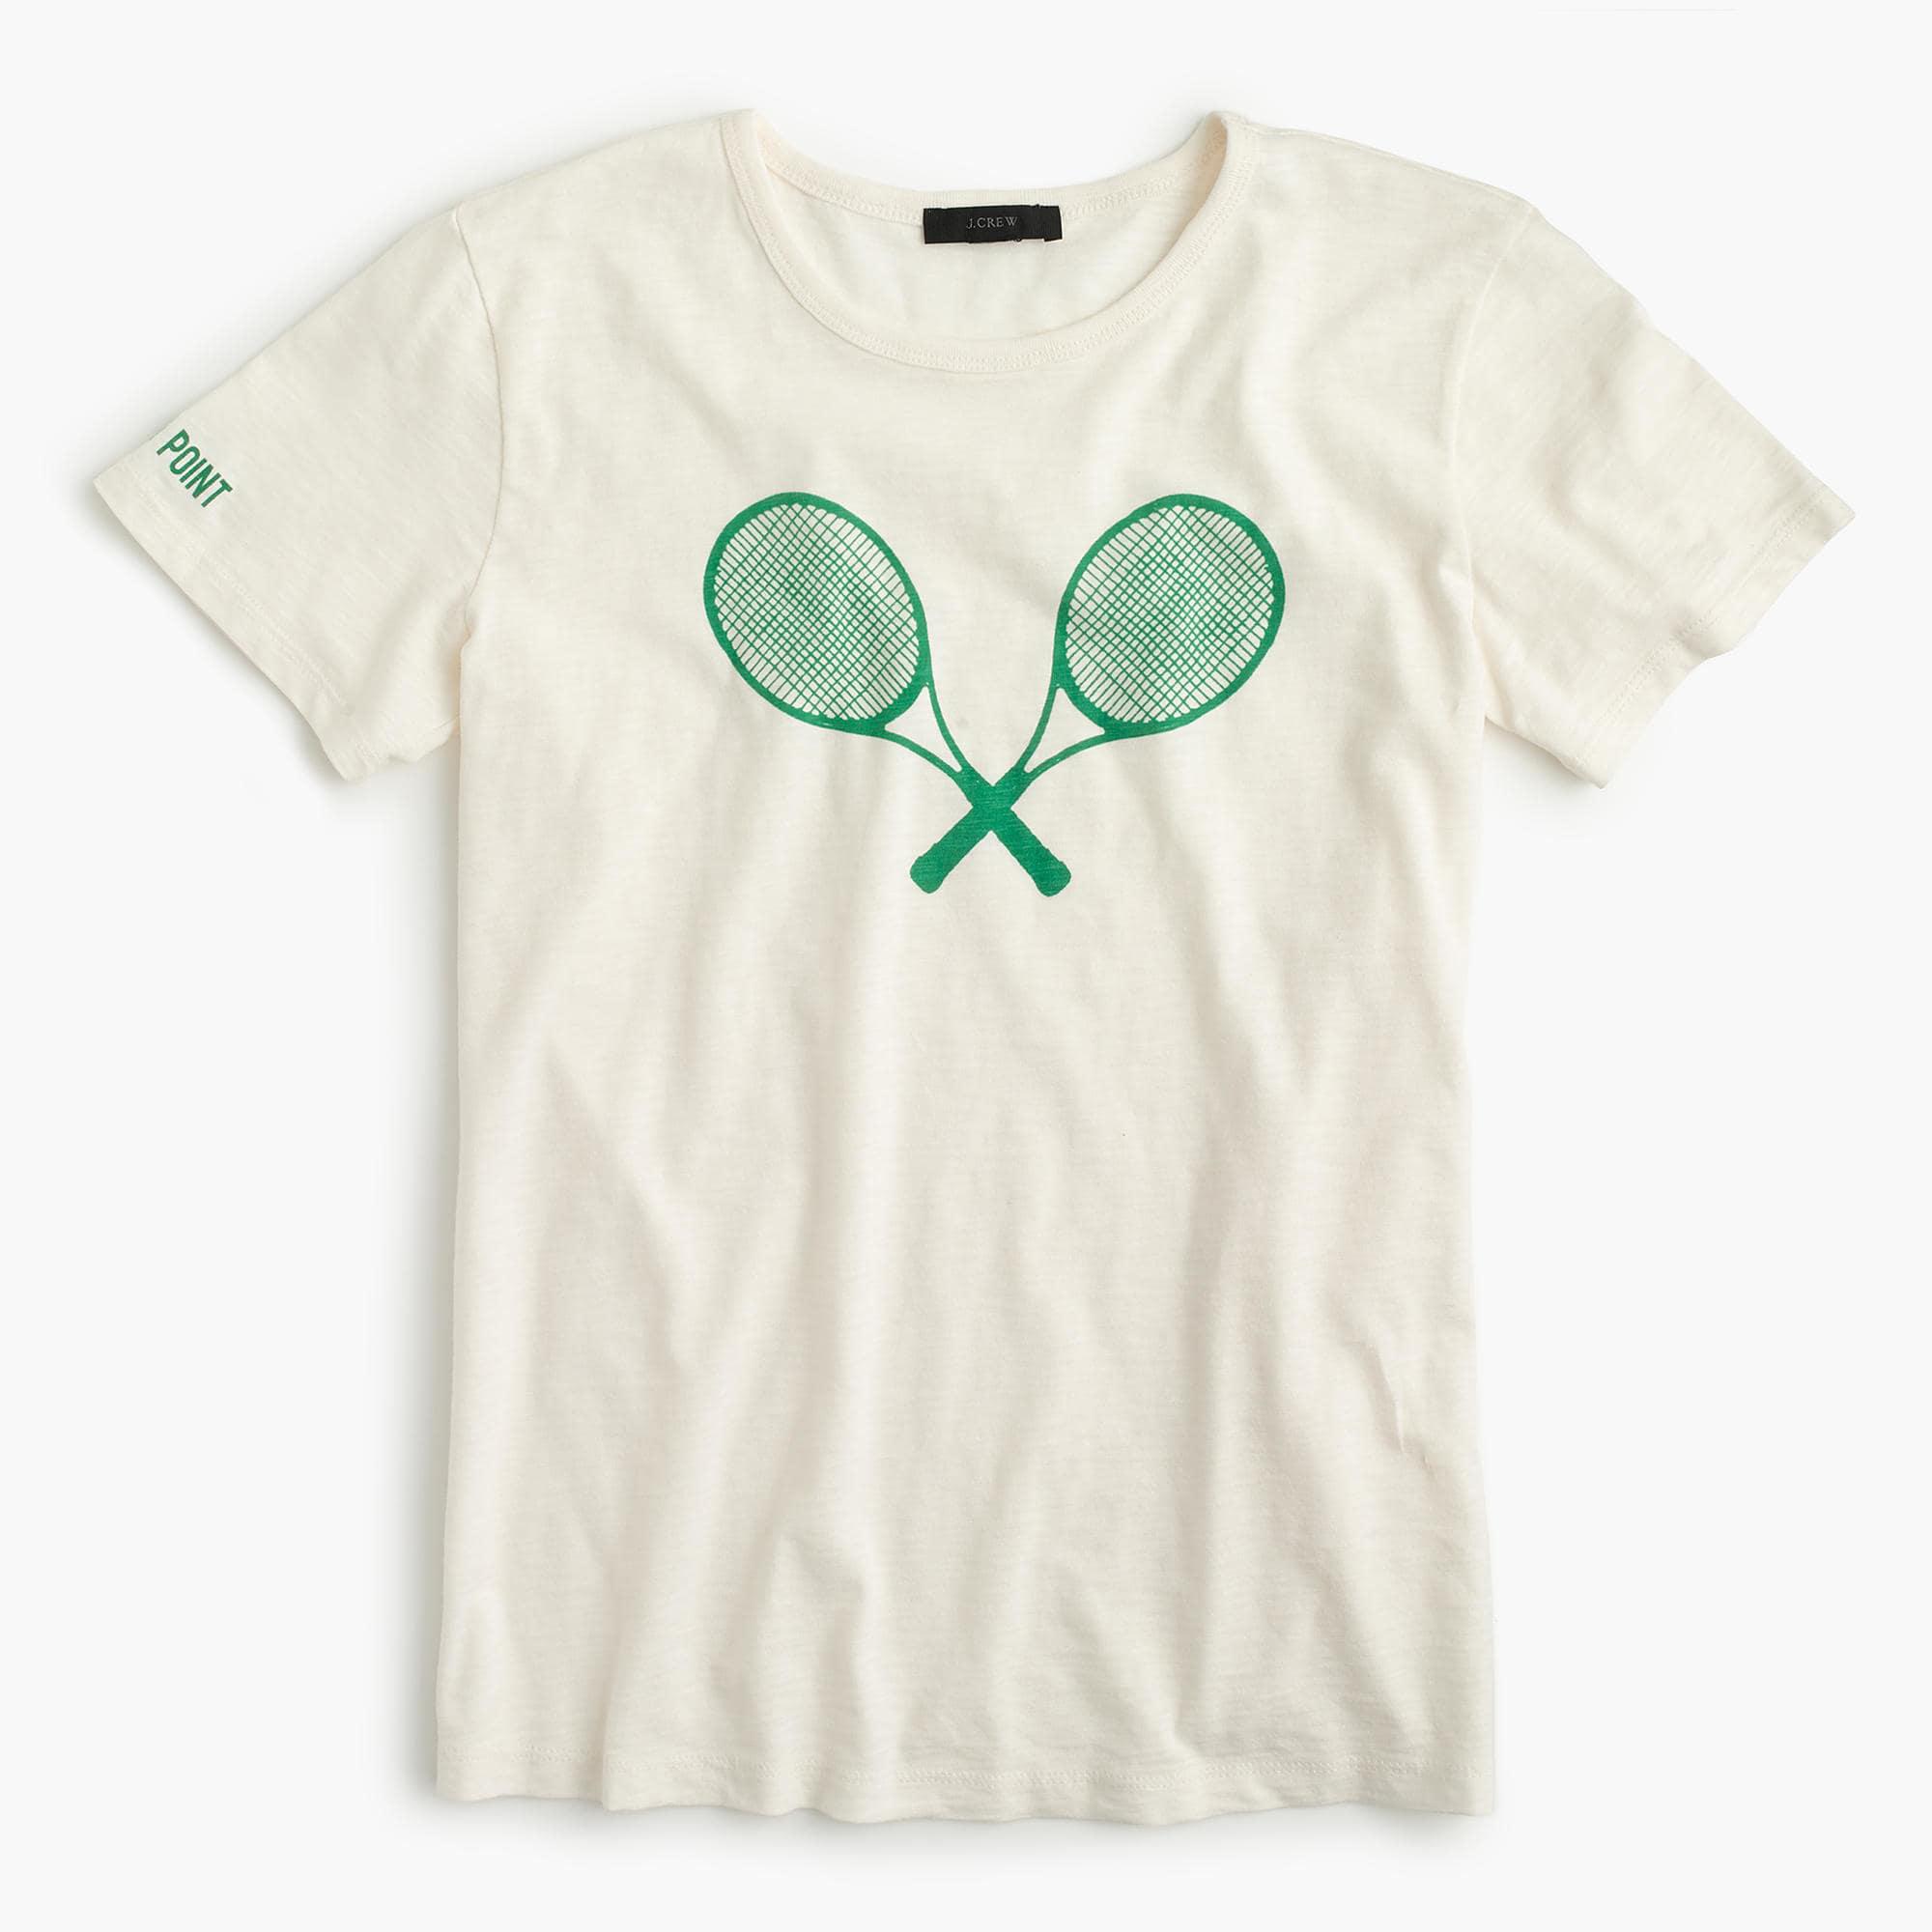 J.Crew Tennis Raquet T-shirt in White | Lyst